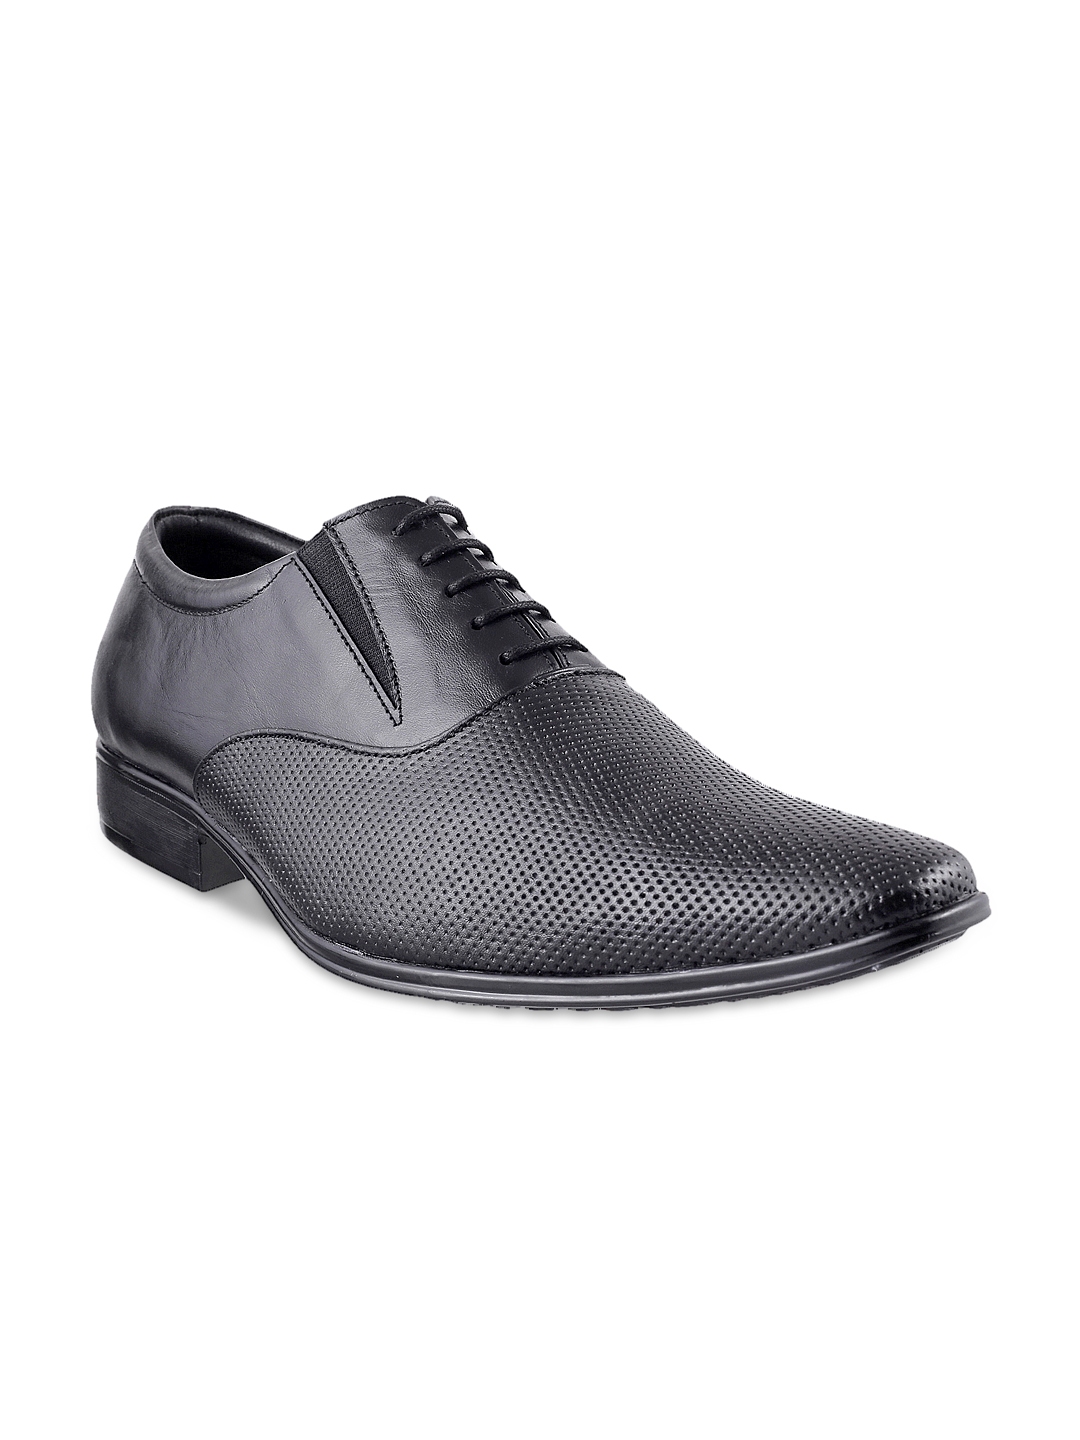 Buy Mochi Men Black Leather Formal Shoes - Formal Shoes for Men 1014590 ...